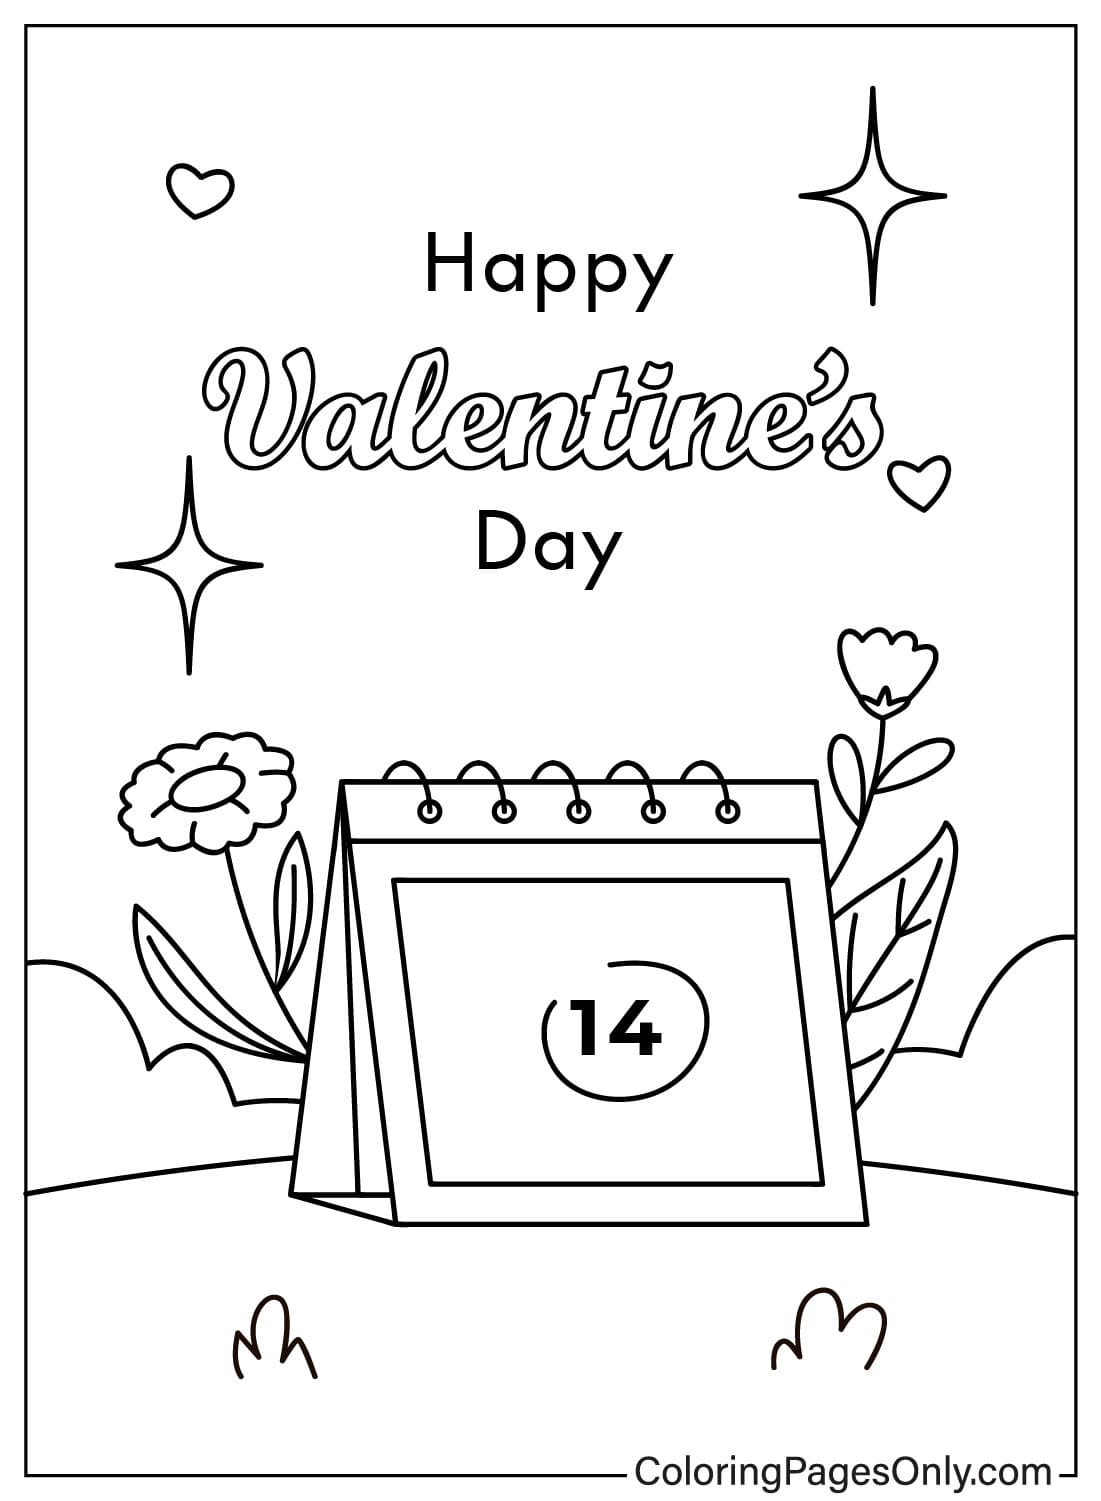 Malvorlagen für Valentinstagskarten zum Ausdrucken aus Valentinstagskarten